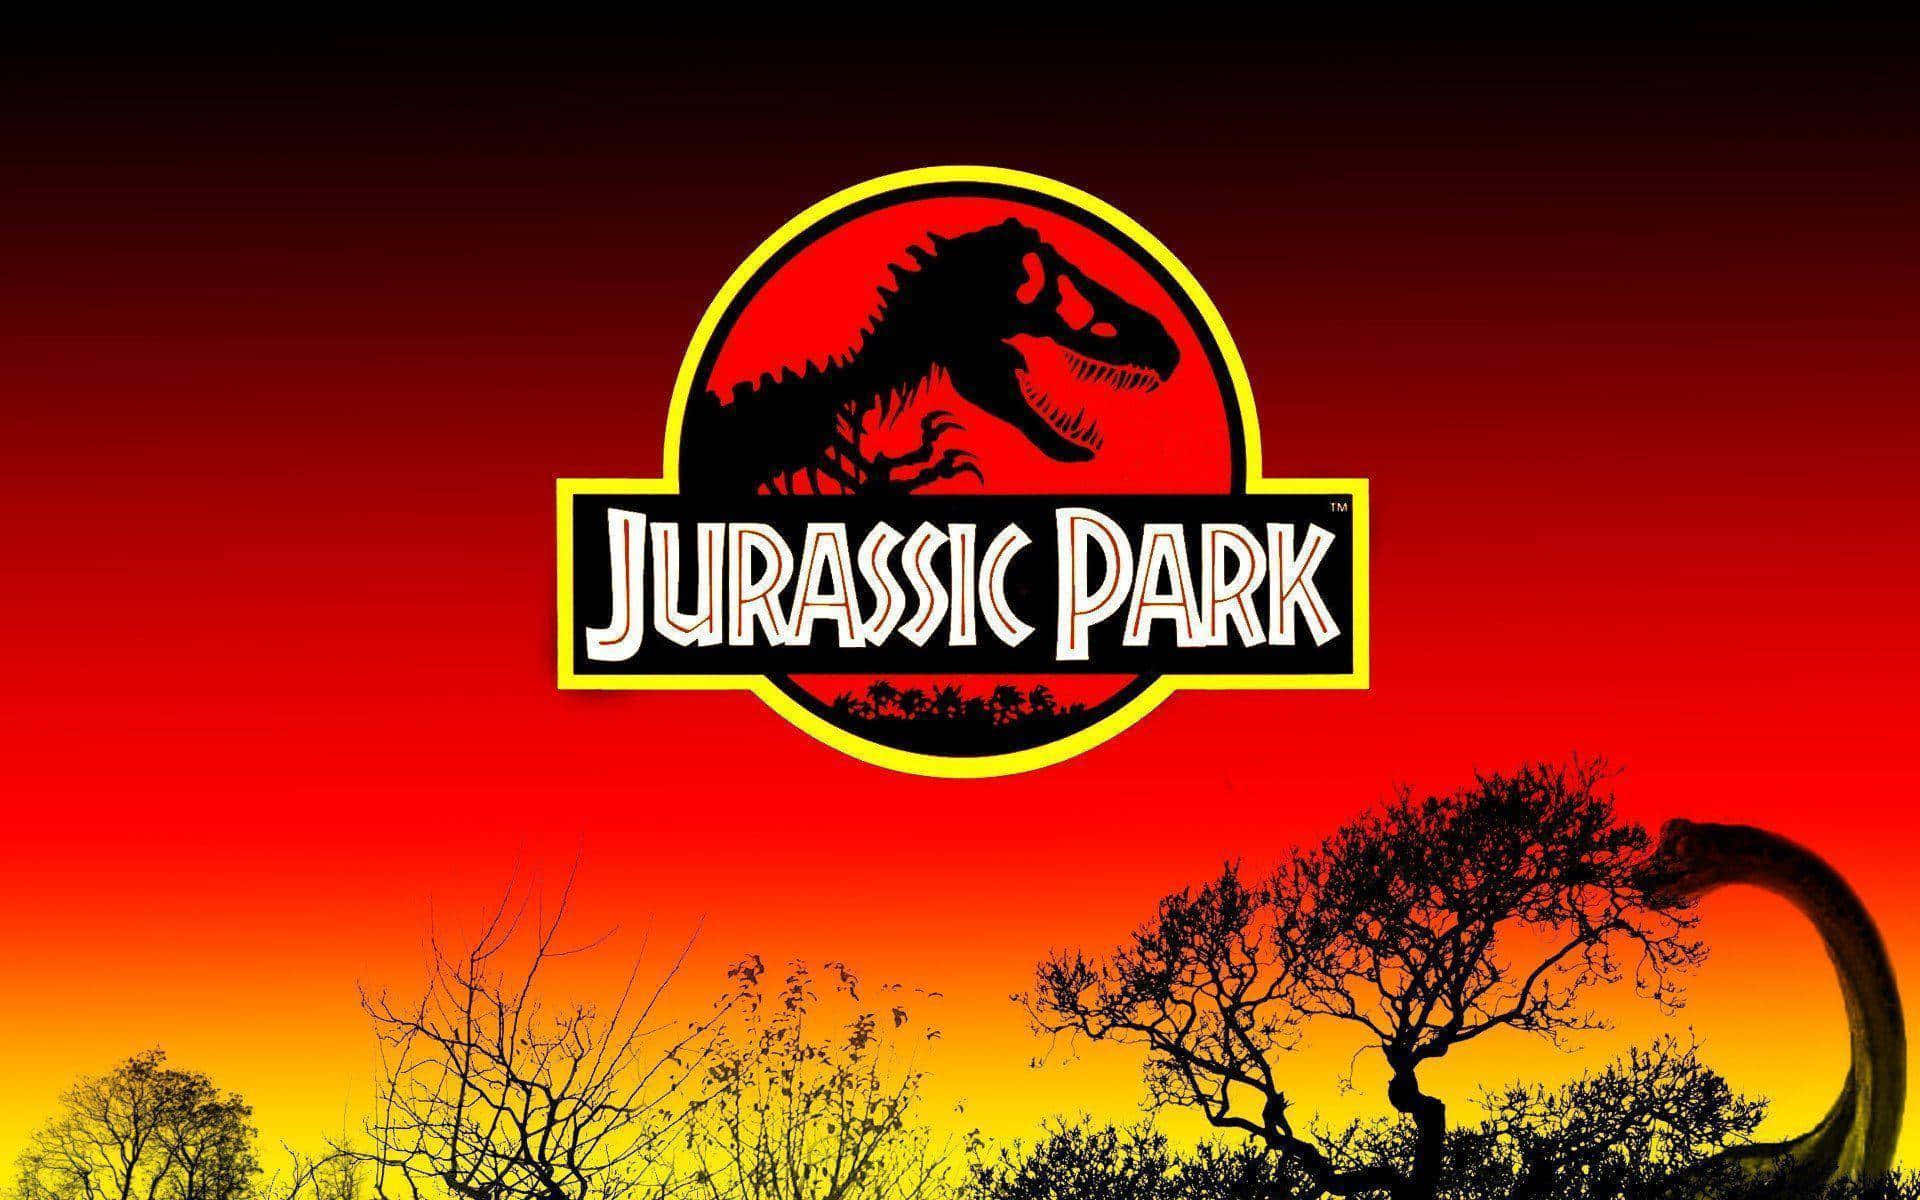 Jurassicpark Baggrunde, Jurassic Park Baggrunde, Jurassic Park Baggrunde, Jurassic Park Baggrunde, Jurassic Park.